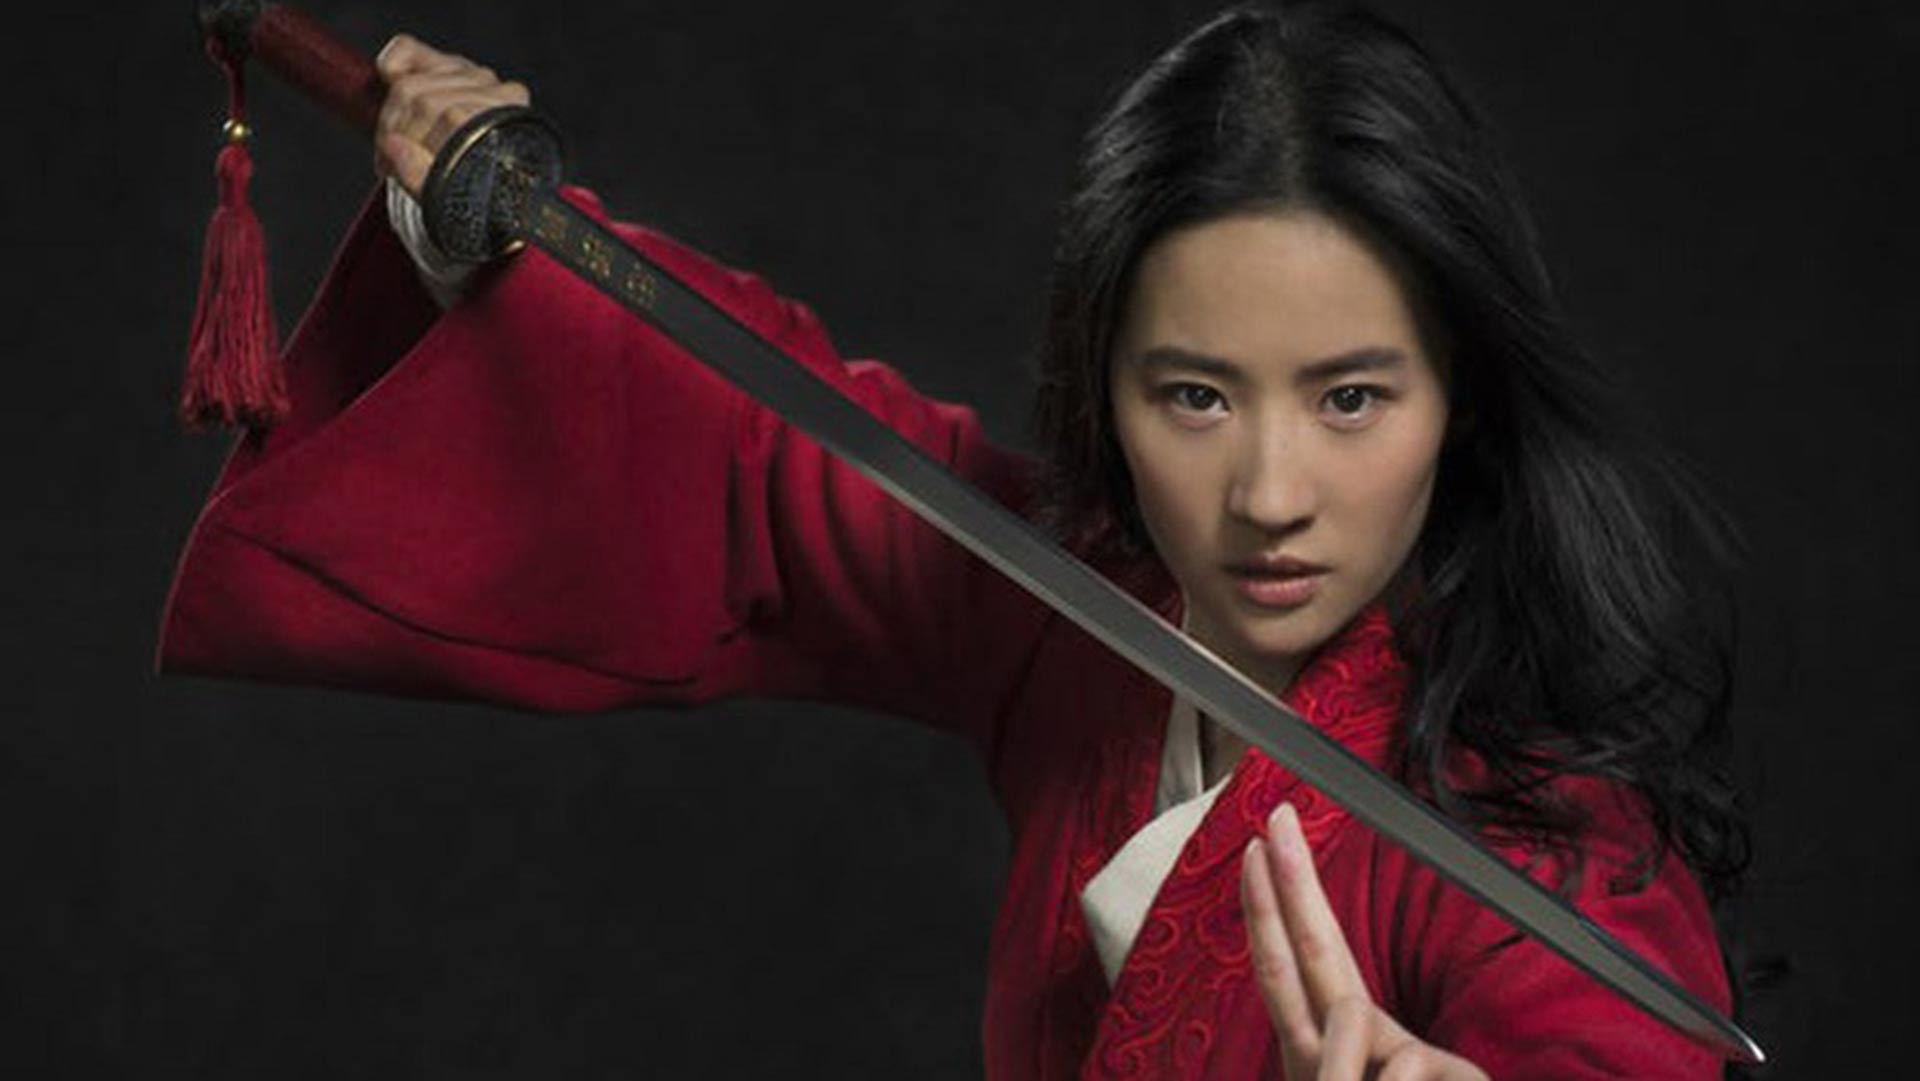 Disney publica la primera imagen oficial de Liu Yifei, la actriz que interpretará a "Mulan"